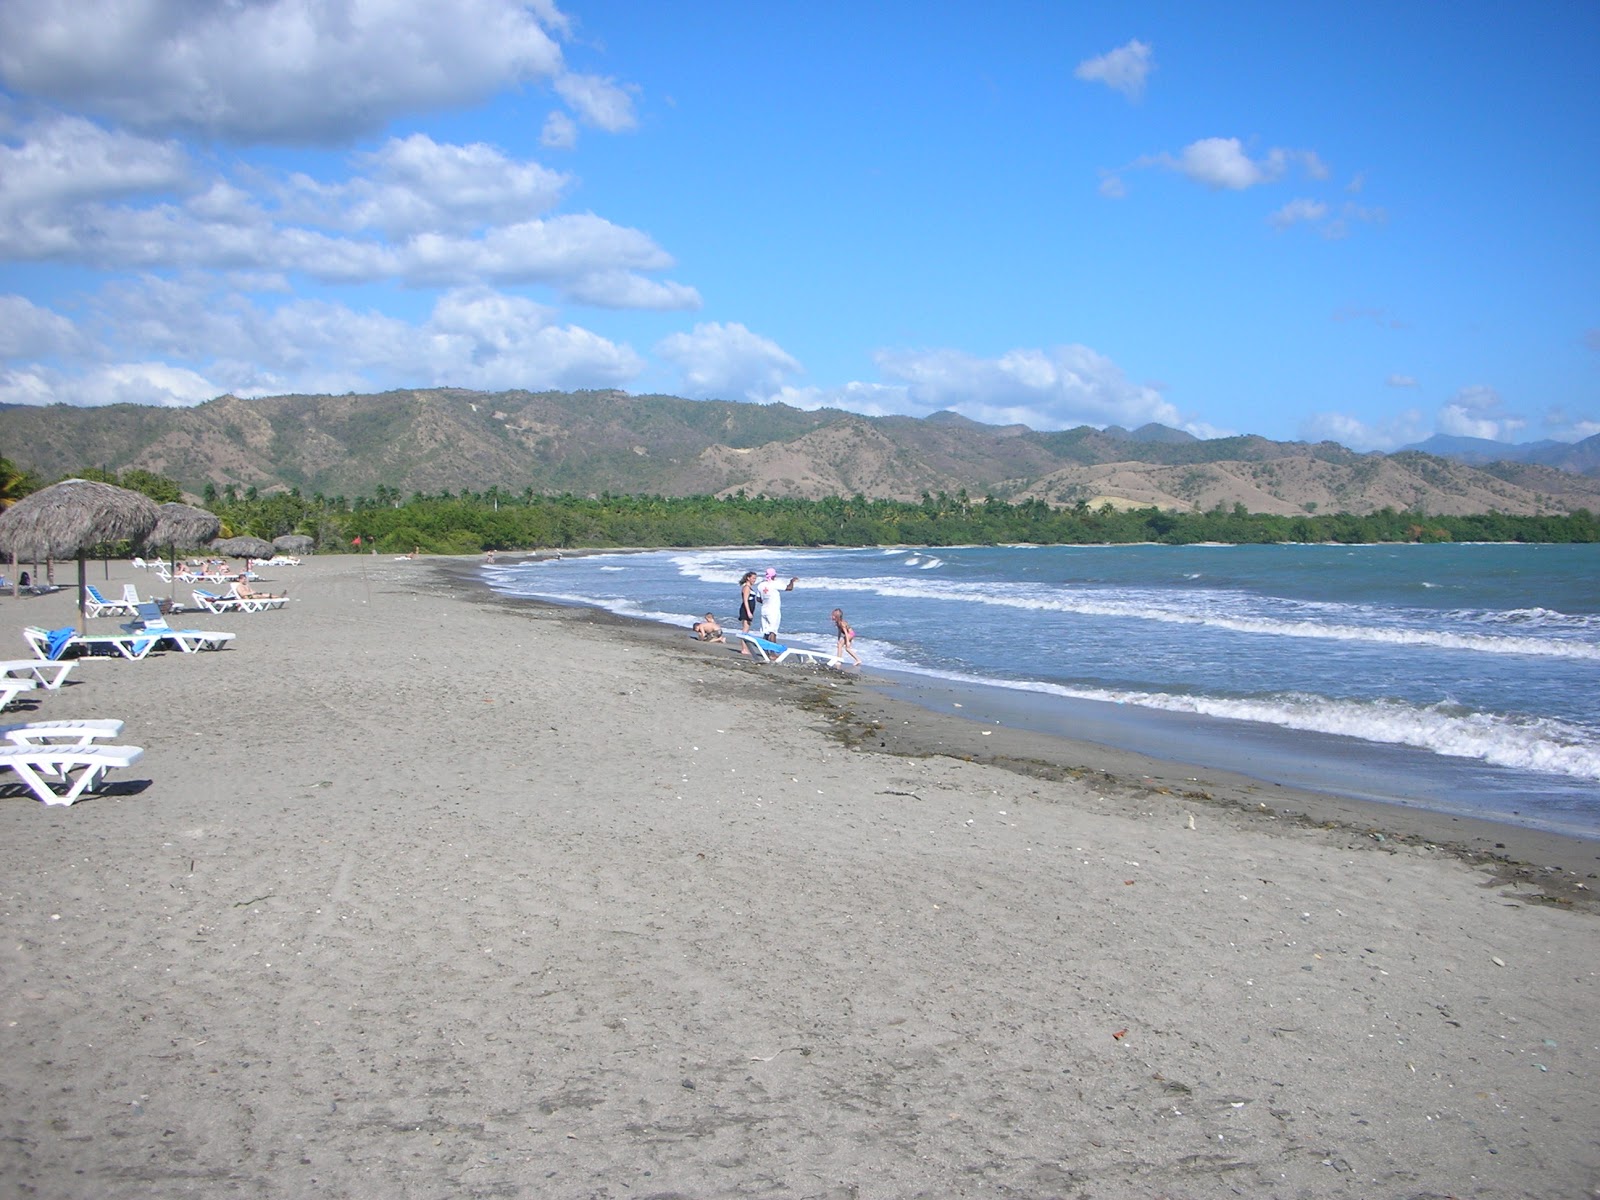 Fotografie cu Playa Paralon cu o suprafață de apa turcoaz